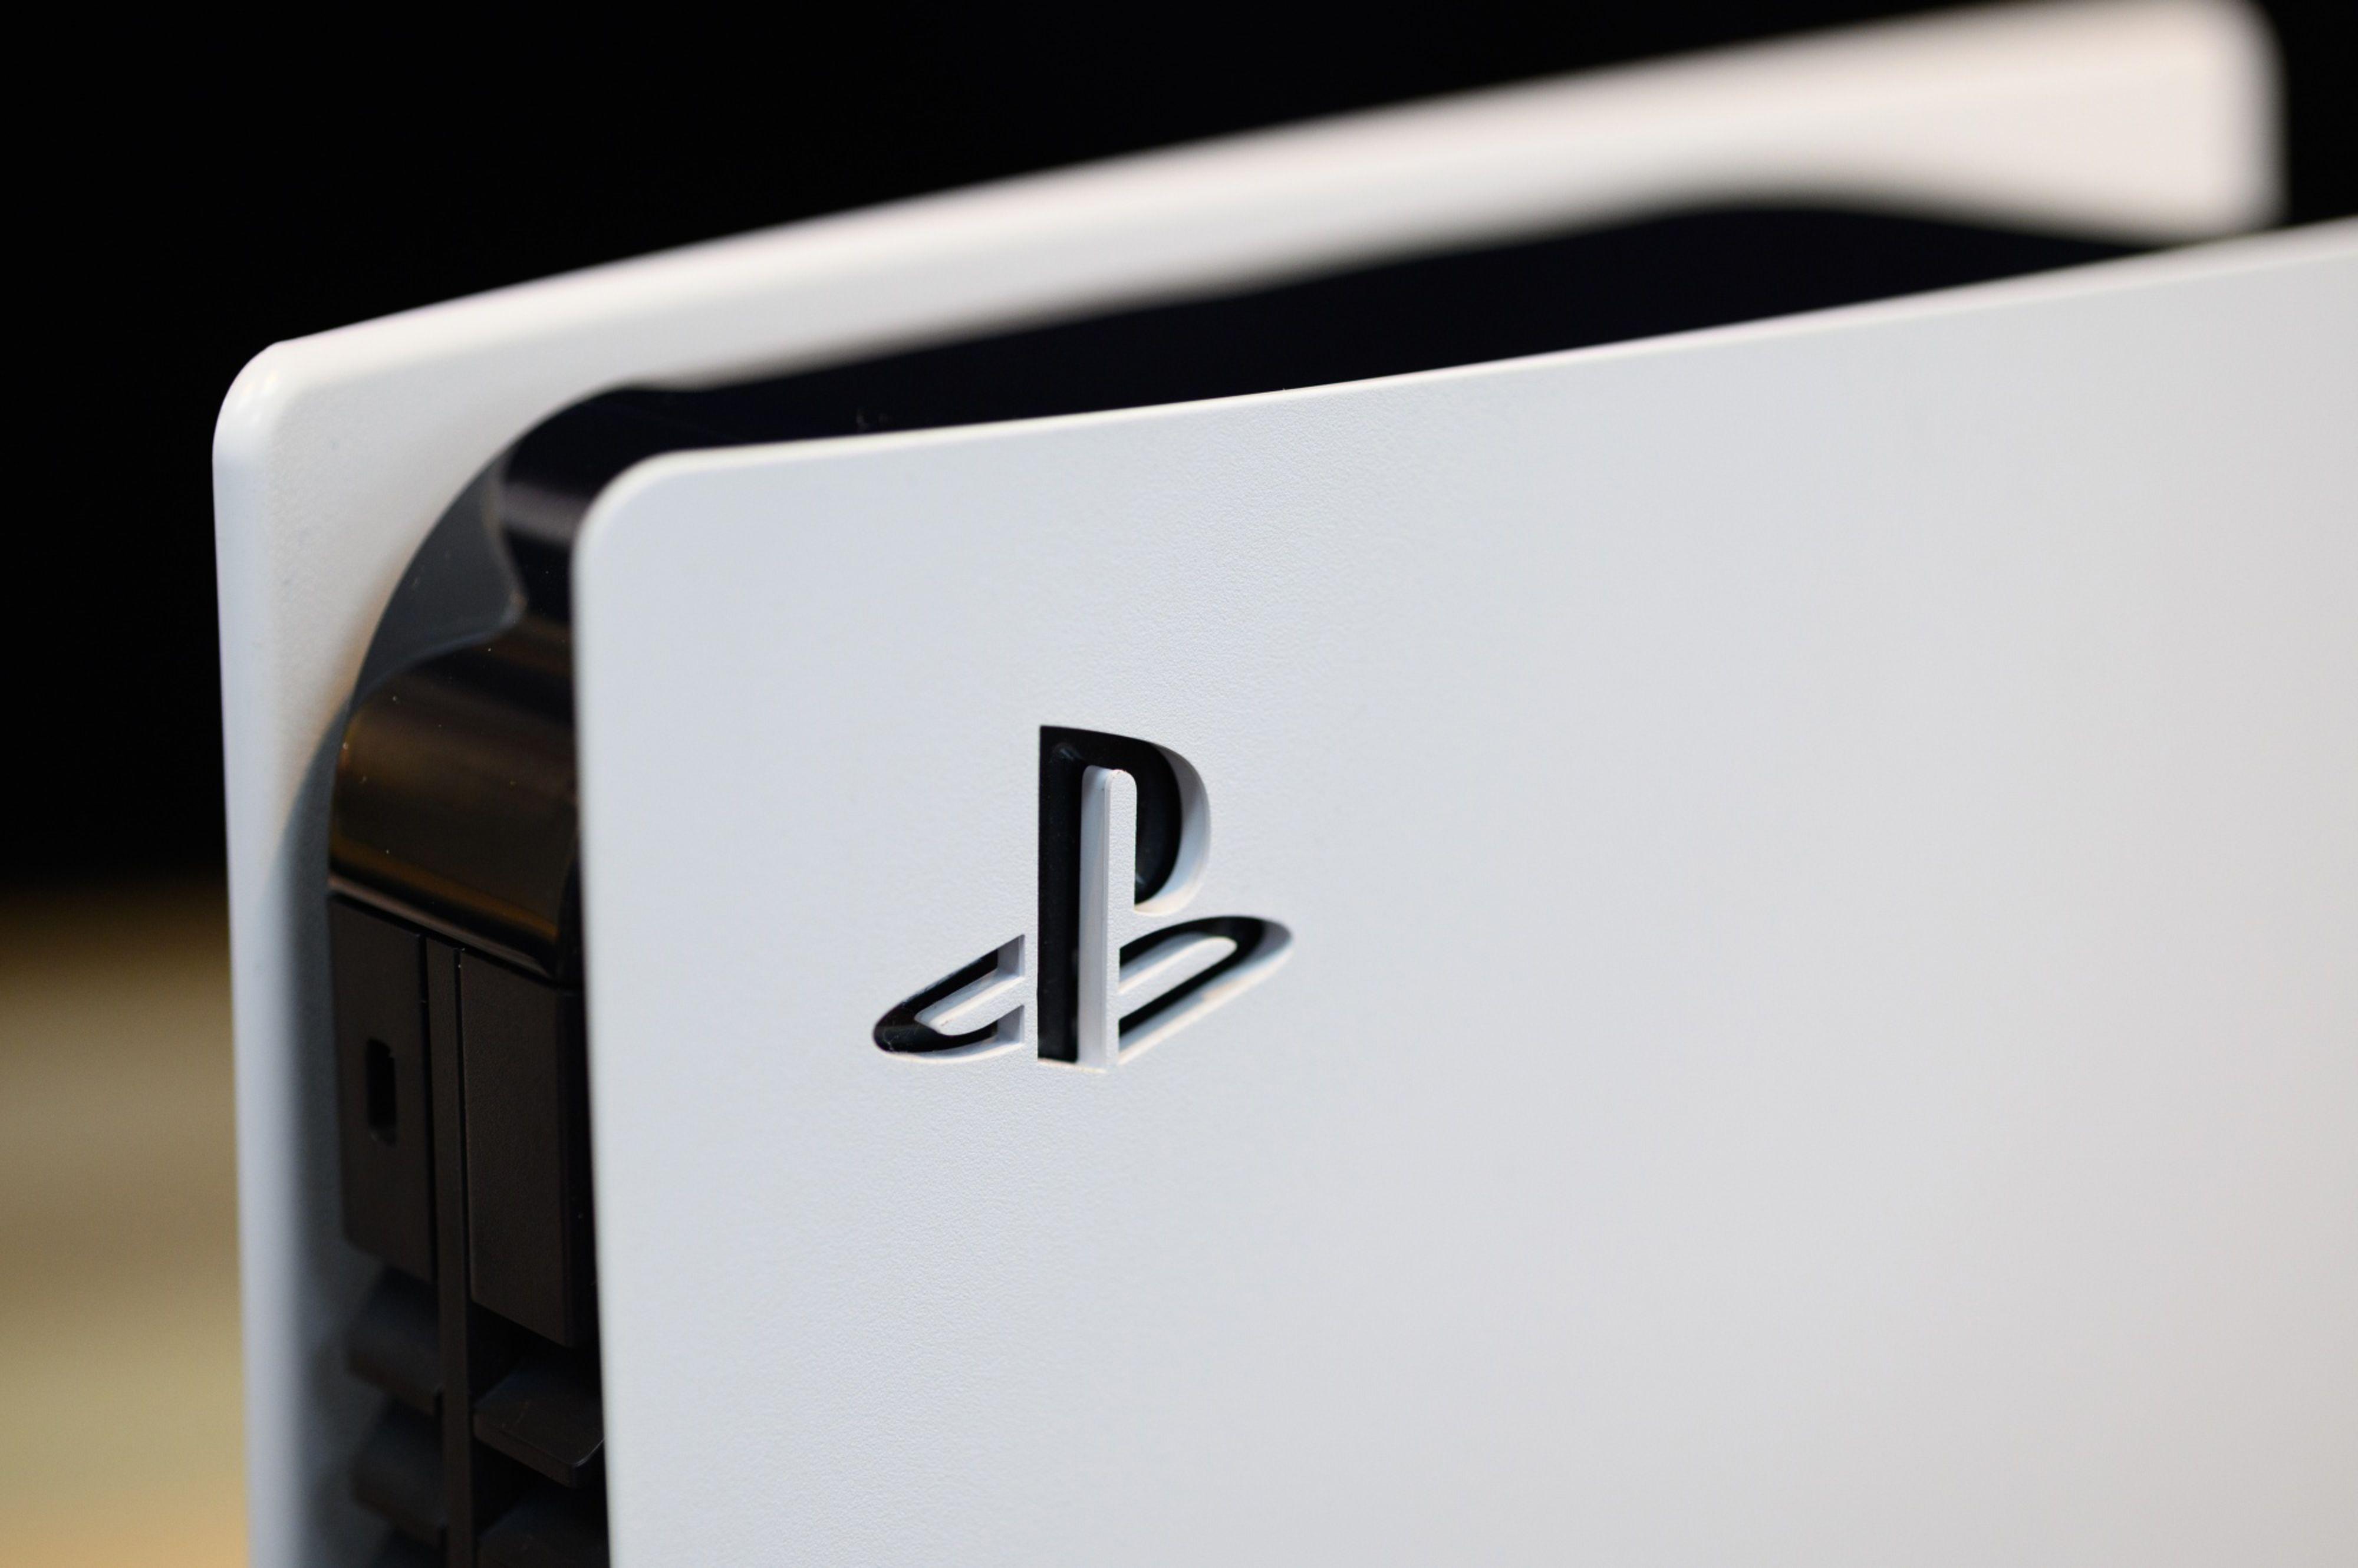 Sony aumenta preço do PS5 em vários países. Vai afetar os valores no Brasil?